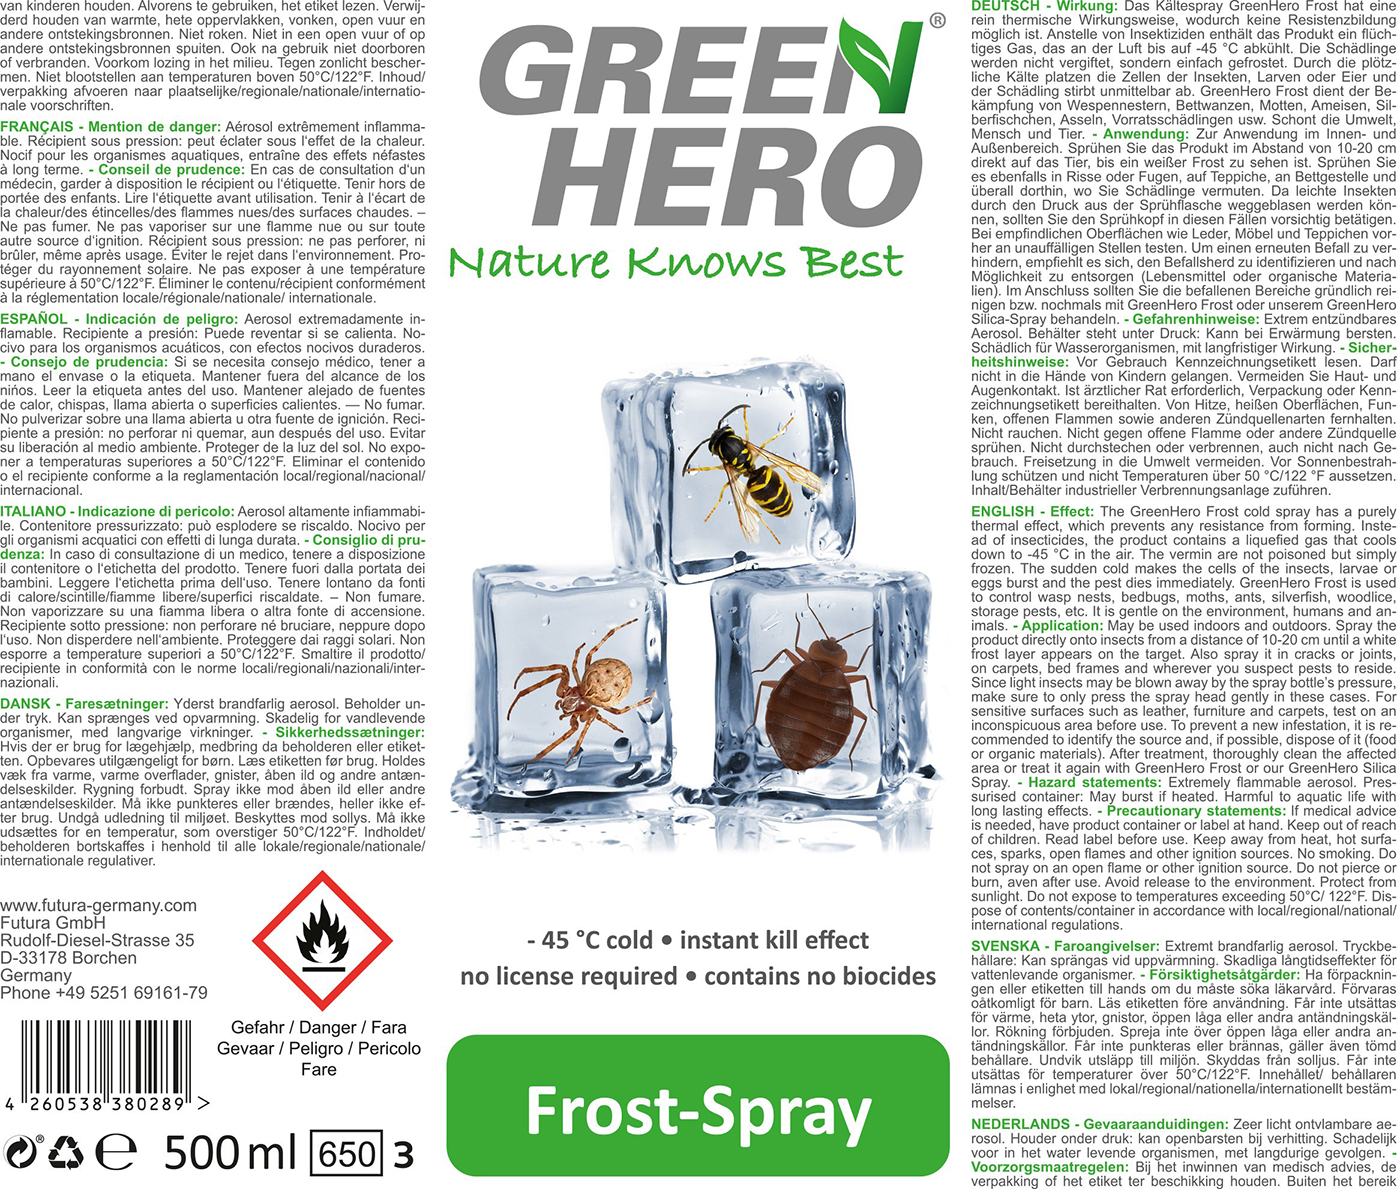 Frost-Spray zur Bekämpfung von Insekten und Nestern